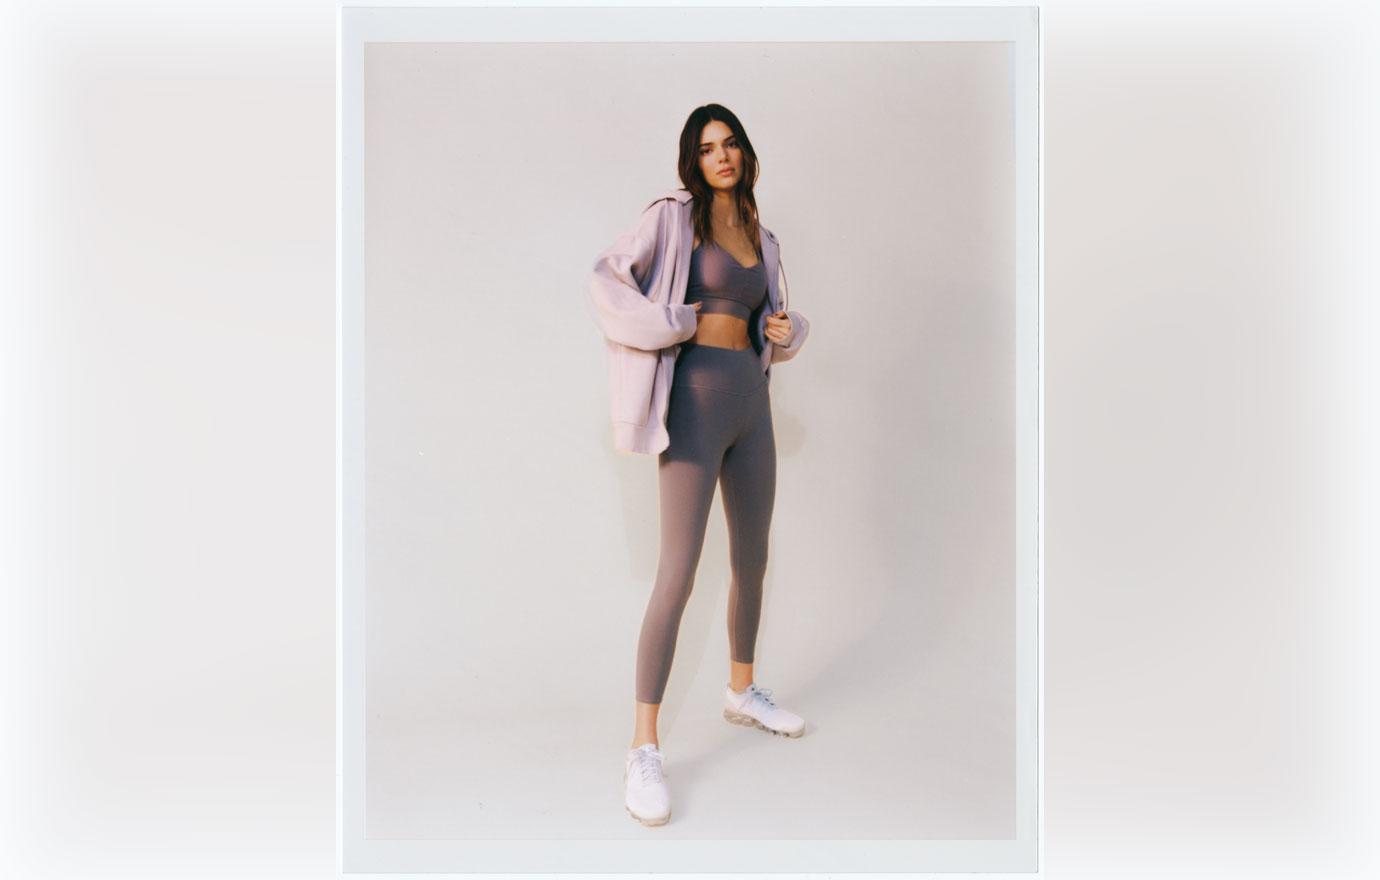 Kendall Jenner Alo Yoga Photoshoot